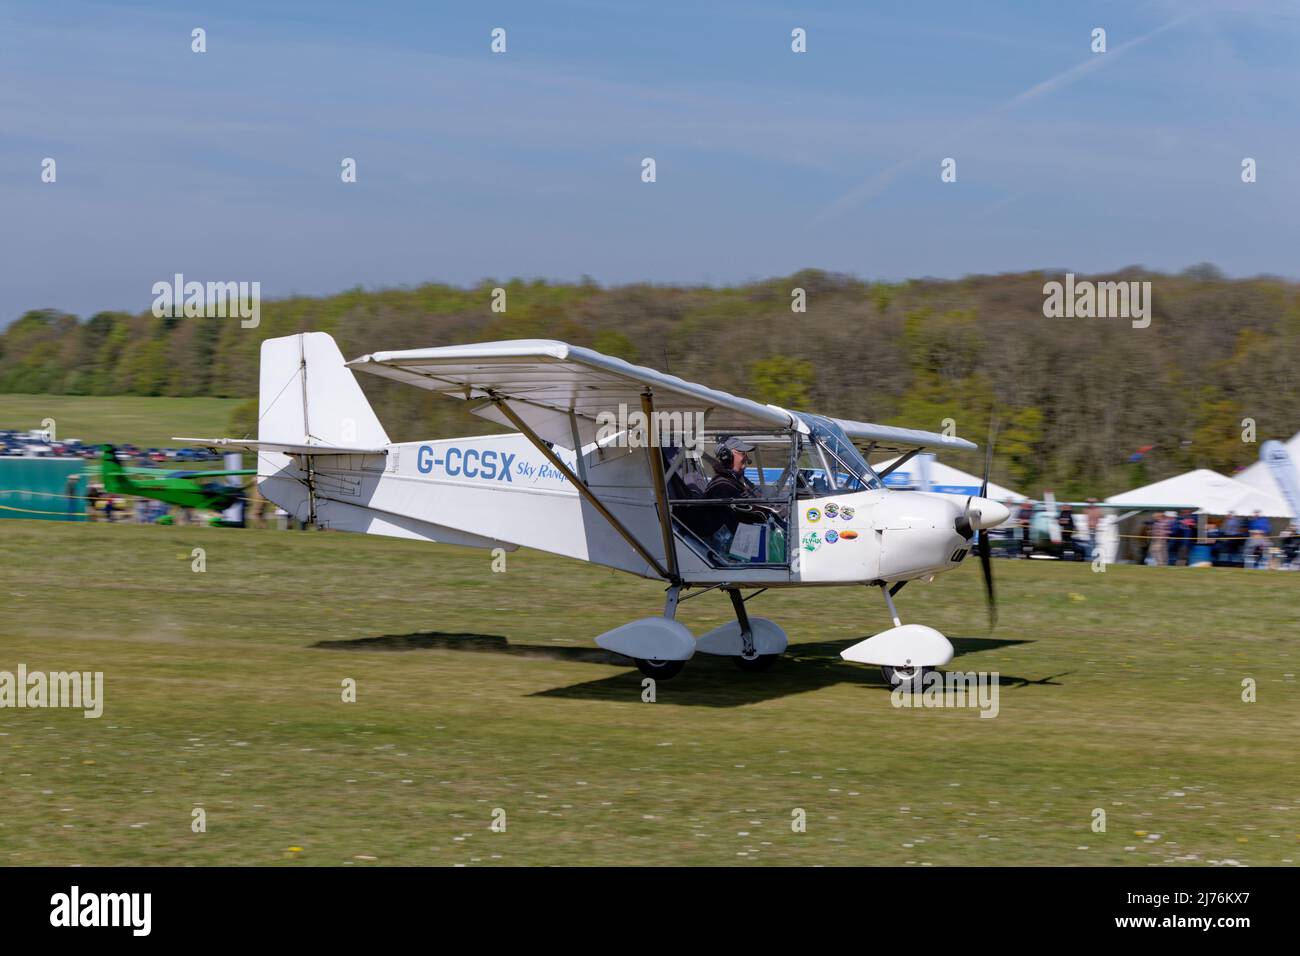 El aeroplano G-CCSX de Skyranger Swift llega al aeródromo de Popham, en Hampshire, Inglaterra, para asistir a la reunión anual de vuelo de los aviones ultraligeros Foto de stock